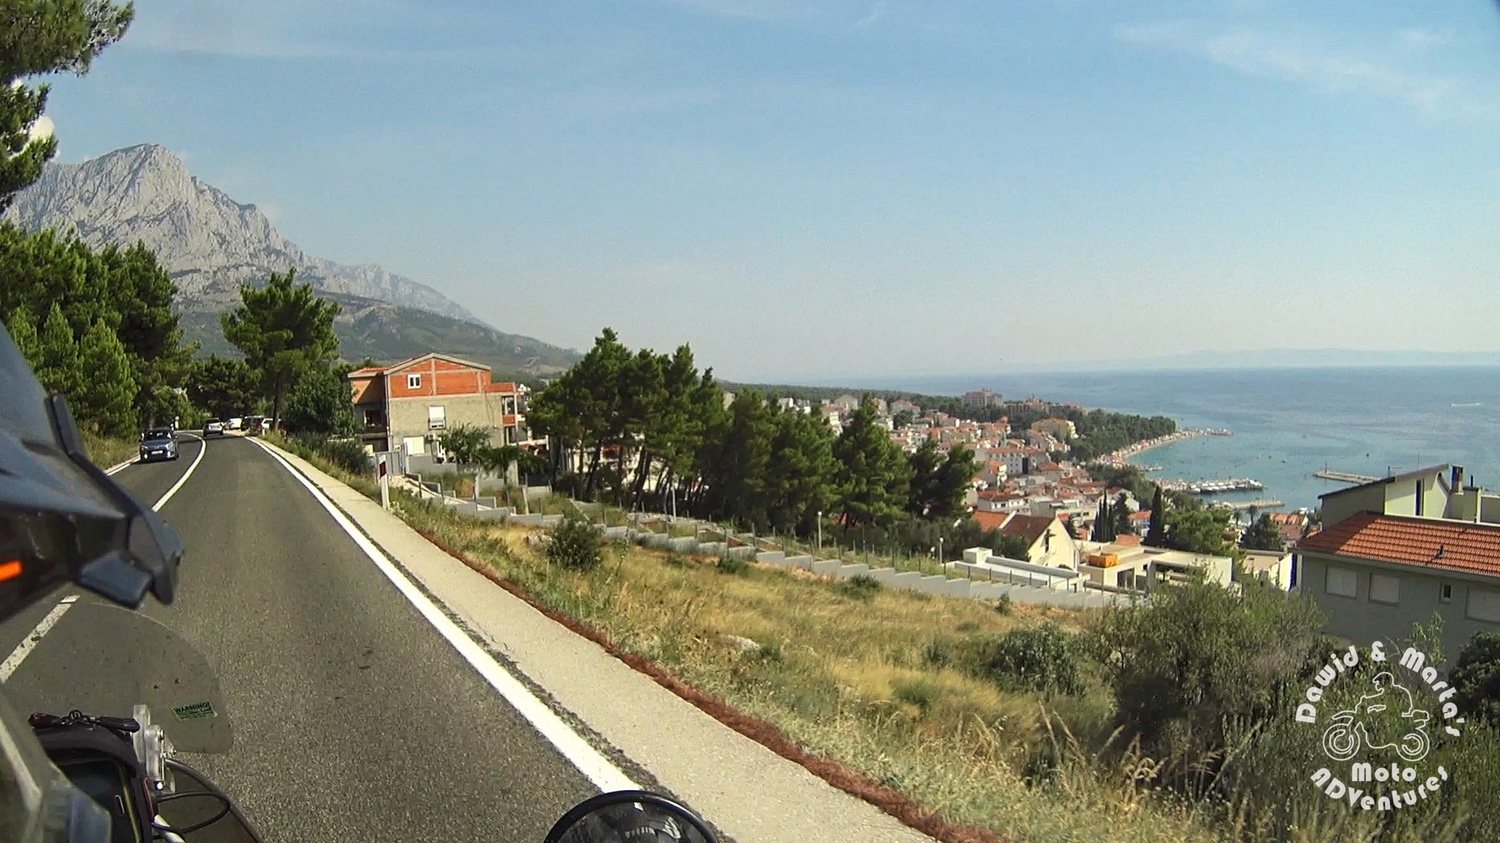 Baska Voda seen from the Adriatic Highway